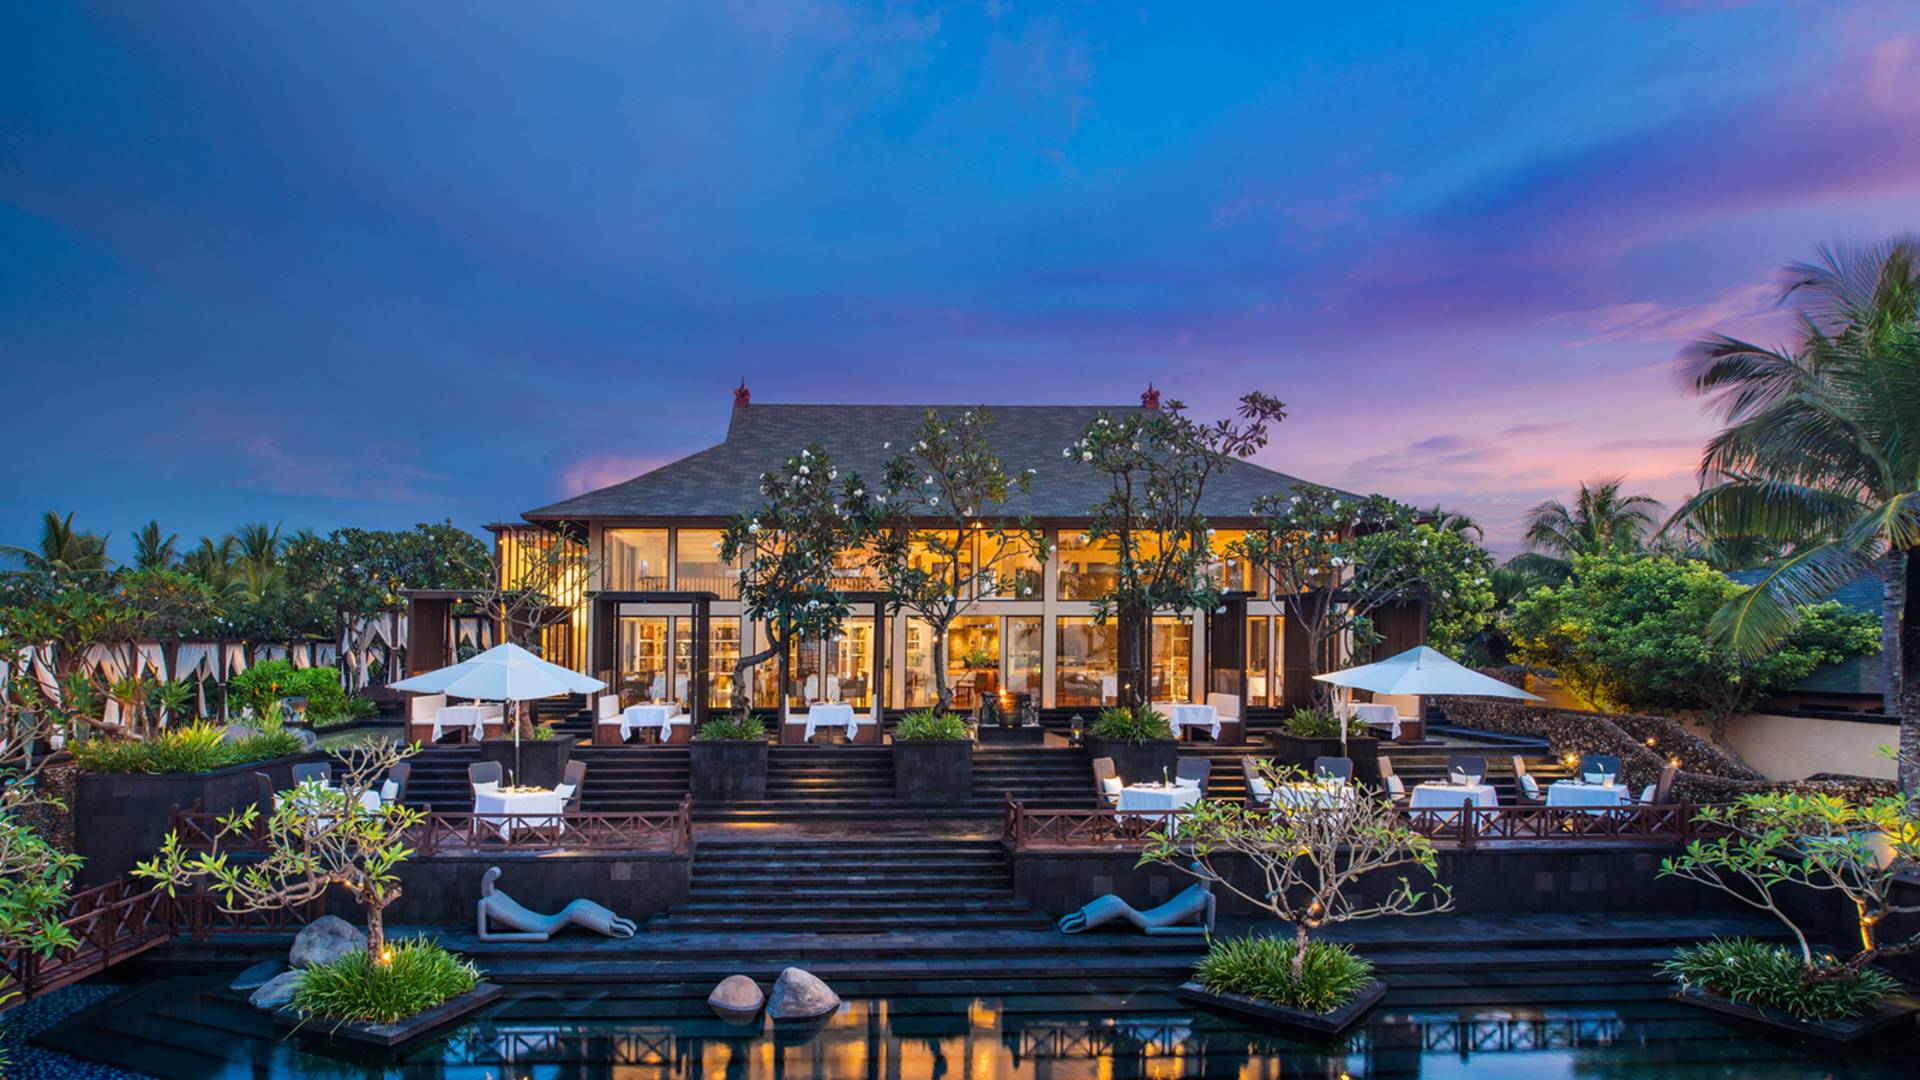 The St. Regis Bali